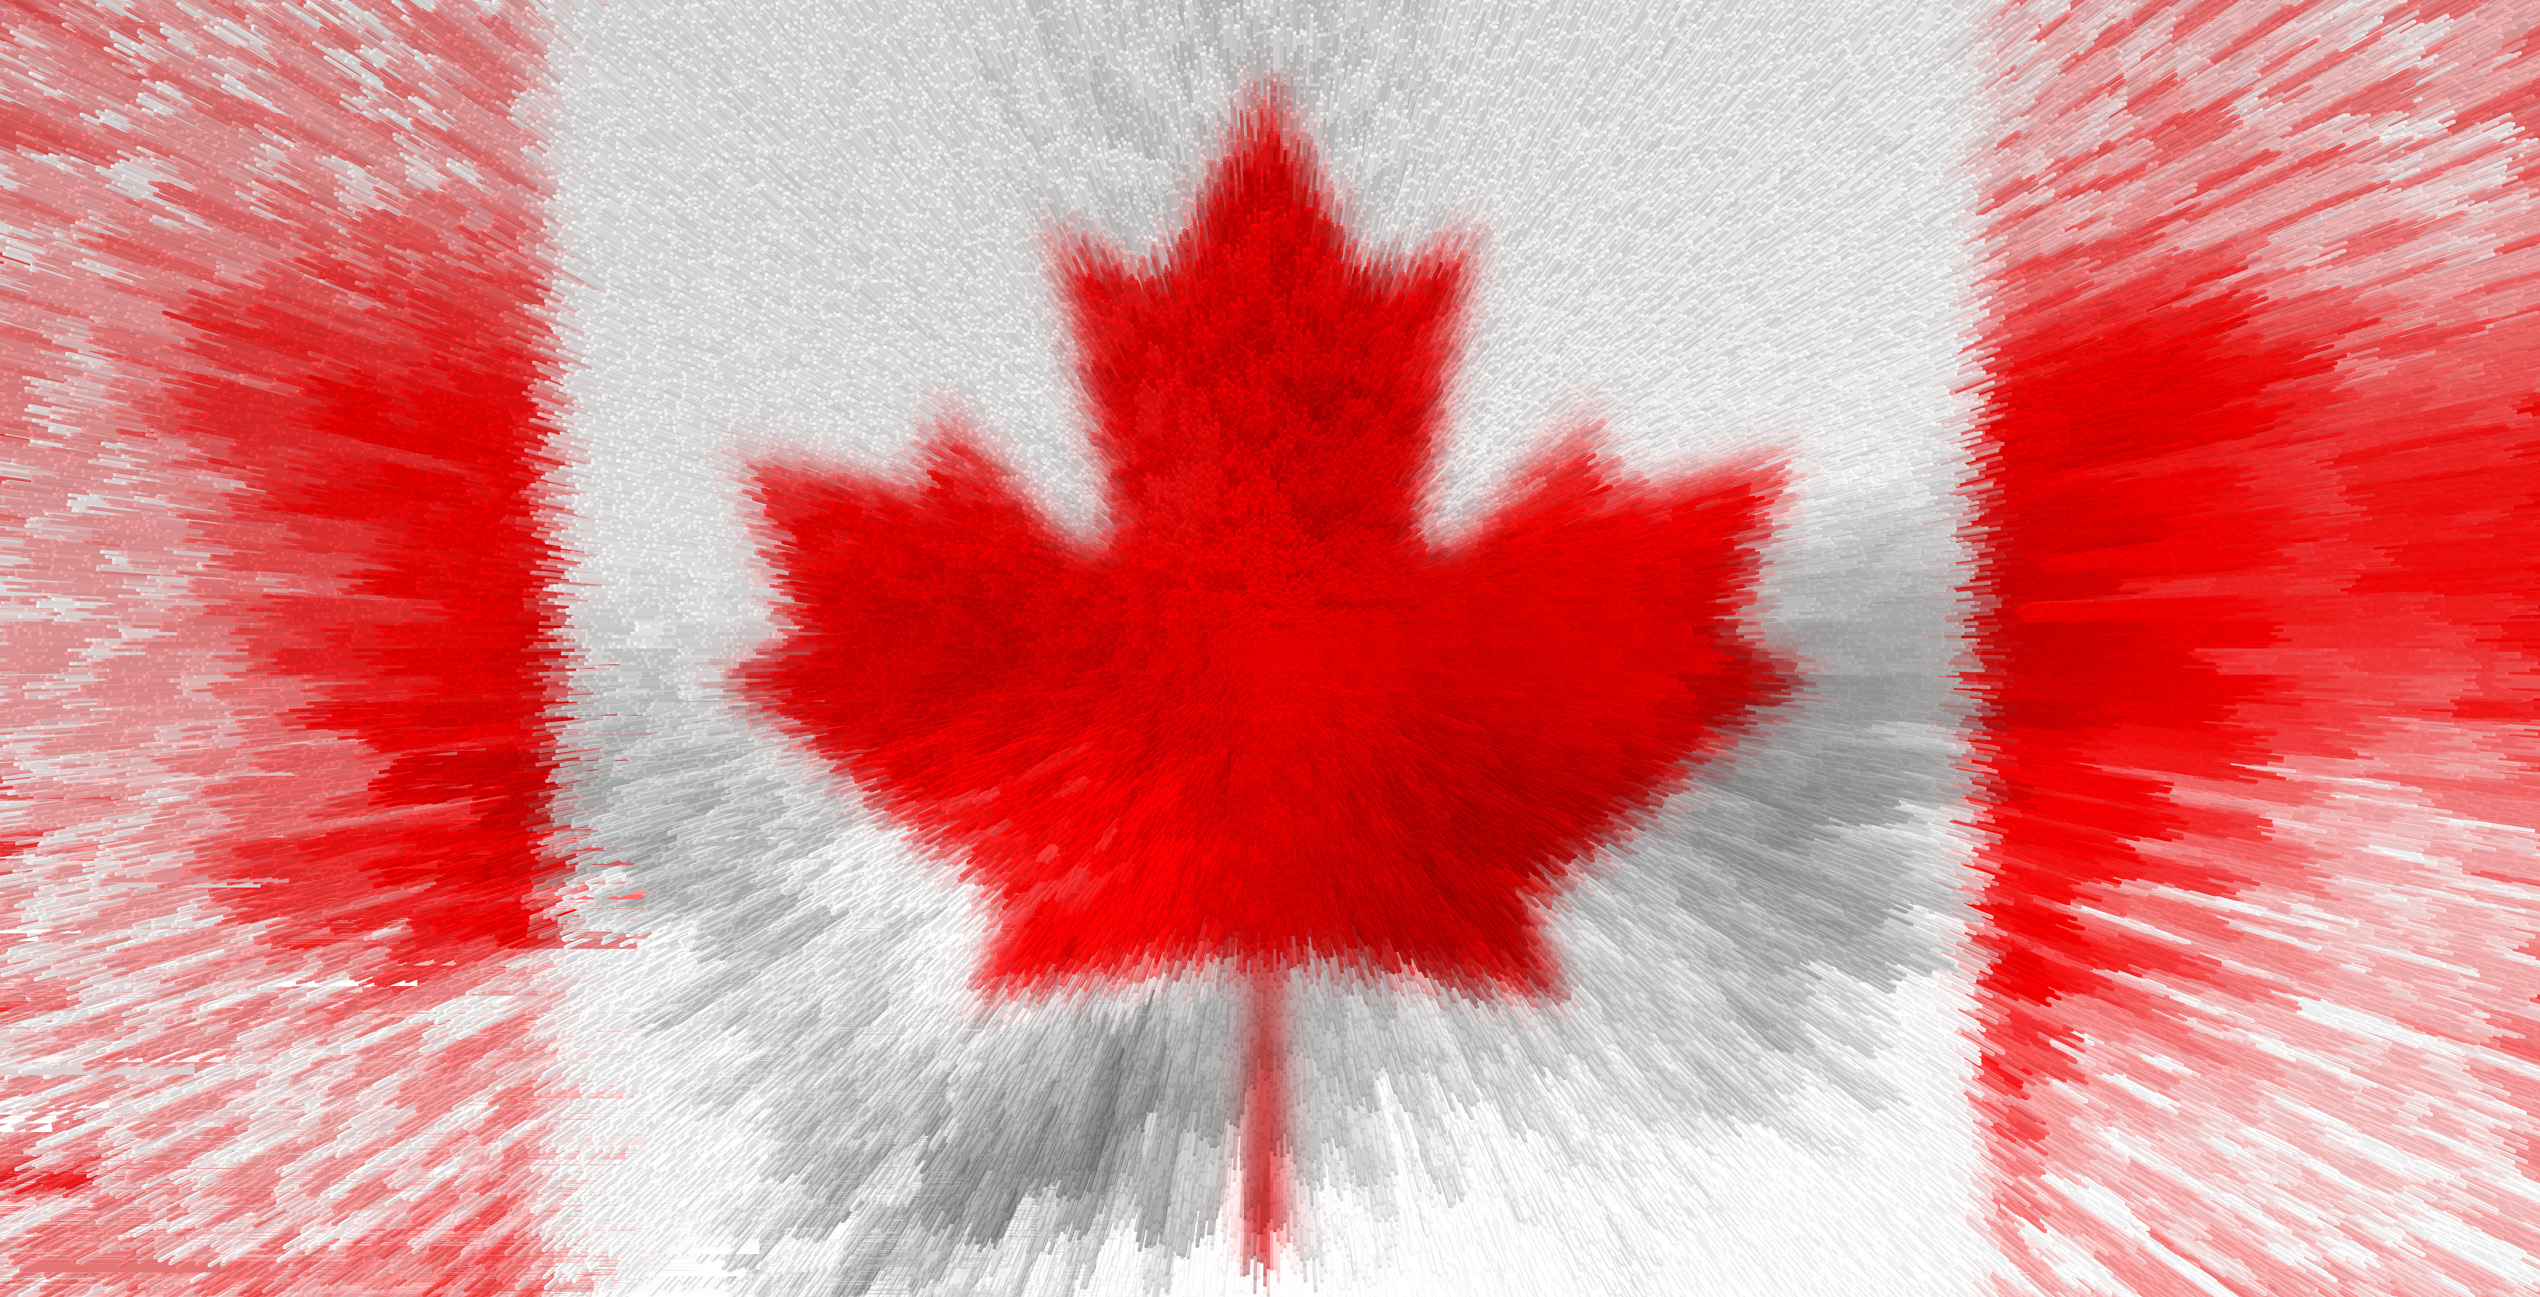 Artistic Canada Flag 2540x1297